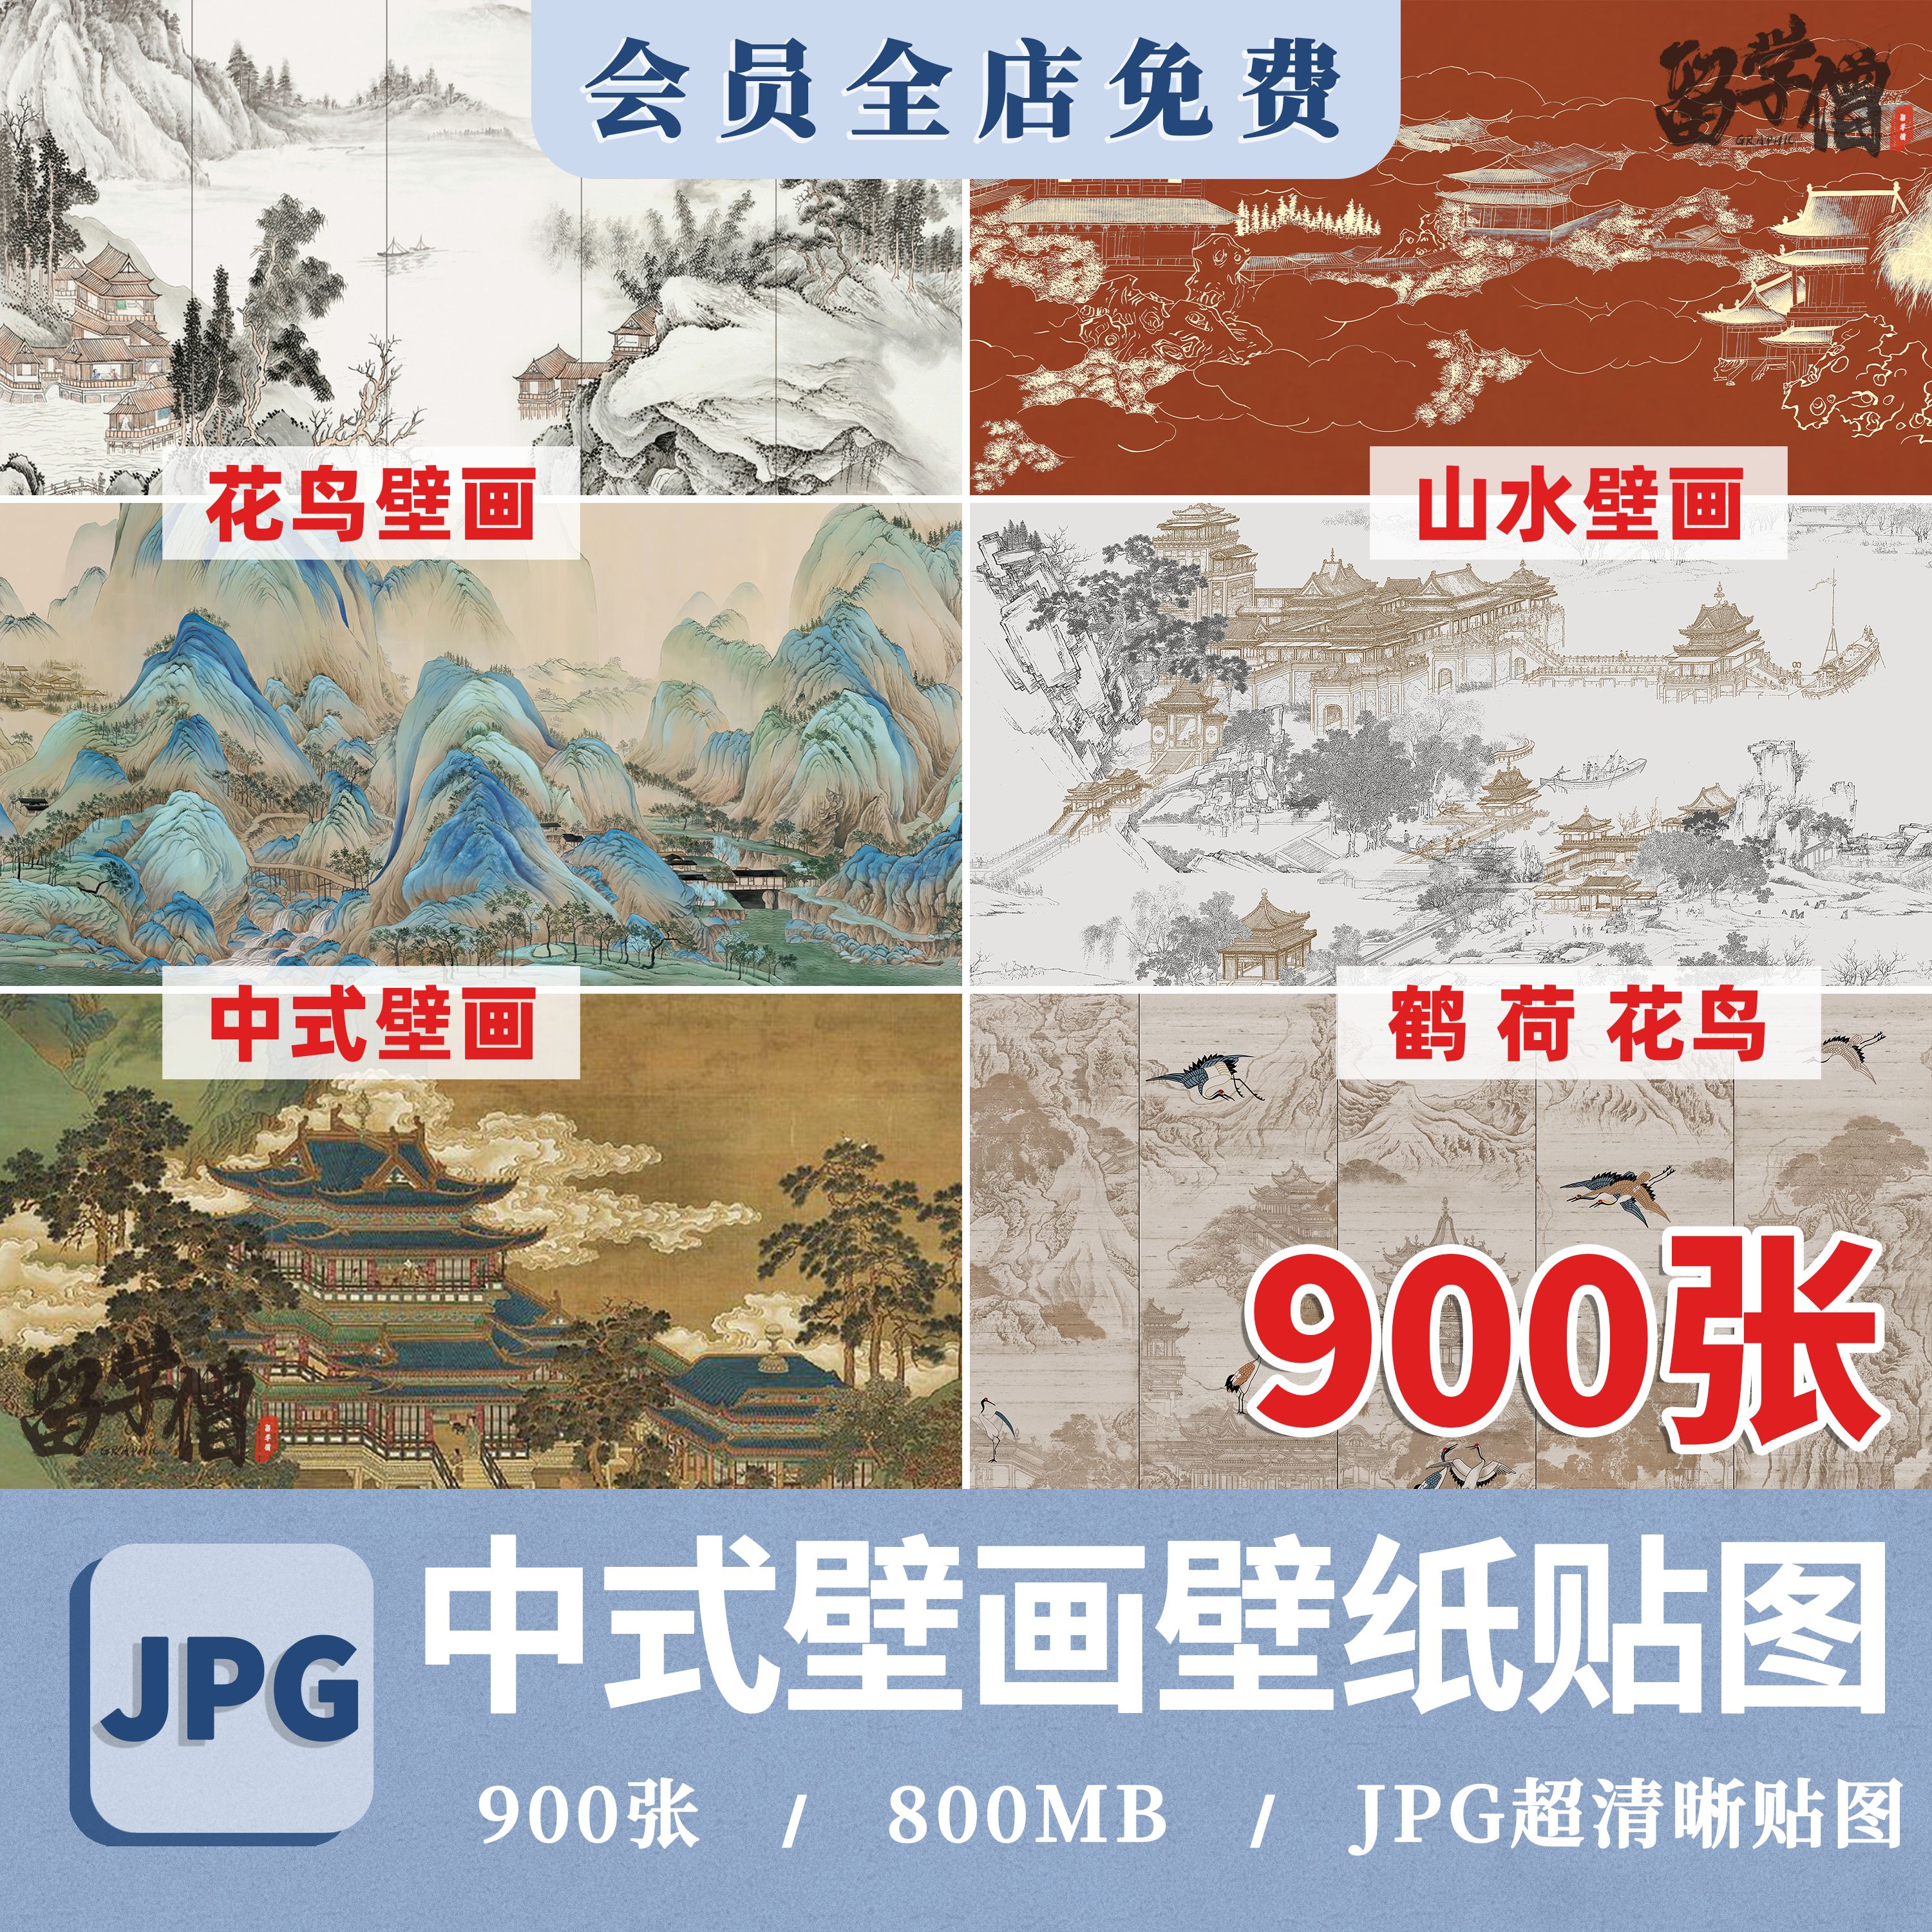 中式山水壁画贴图新中式壁纸水墨装饰画山水画背景墙SU贴图ps素材